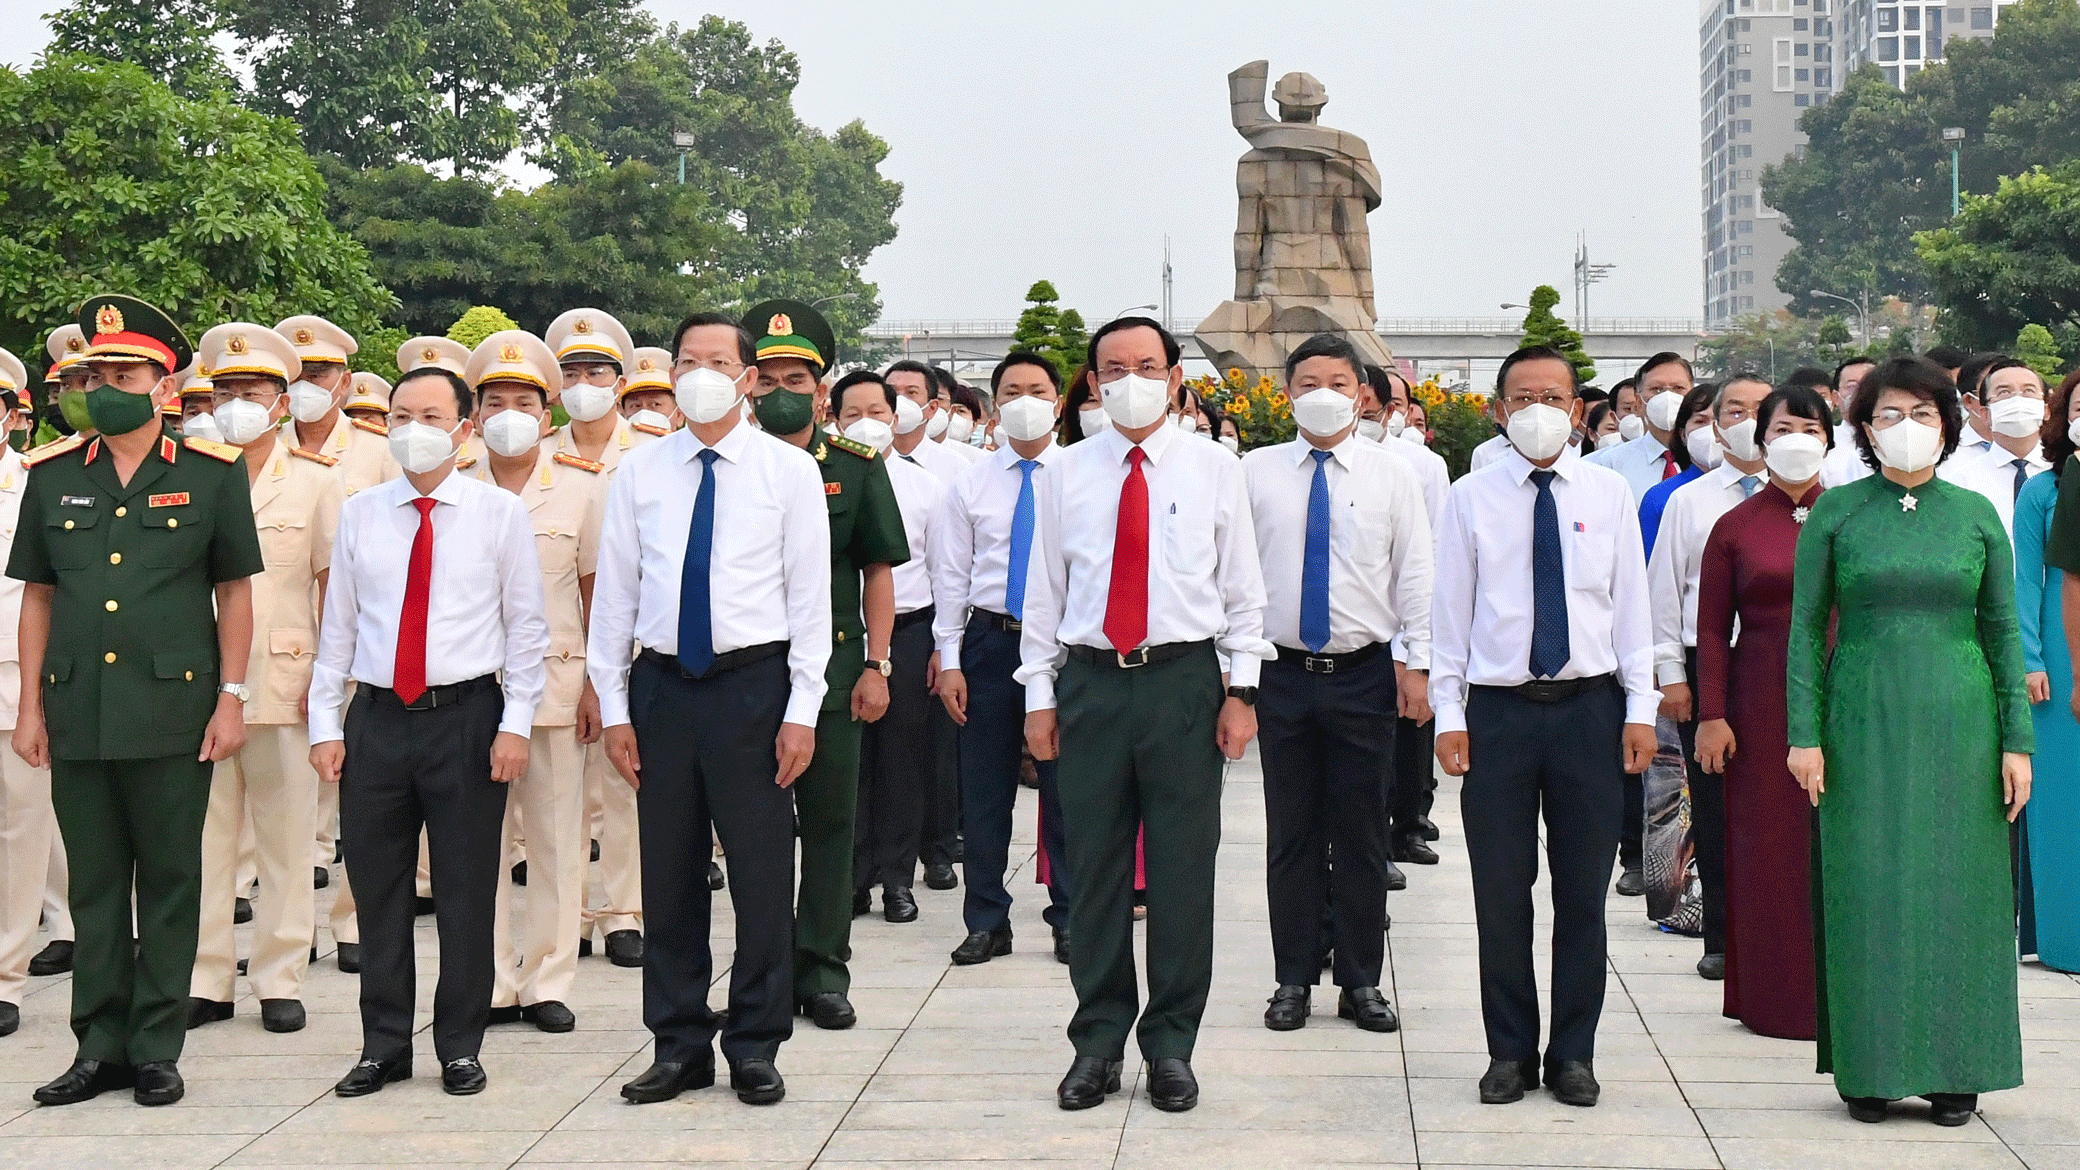 Bí thư Thành ủy TPHCM Nguyễn Văn Nên cùng các đồng chí lãnh đạo TP, các đại biểu viếng Nghĩa trang Liệt sĩ TP. Ảnh: VIỆT DŨNG